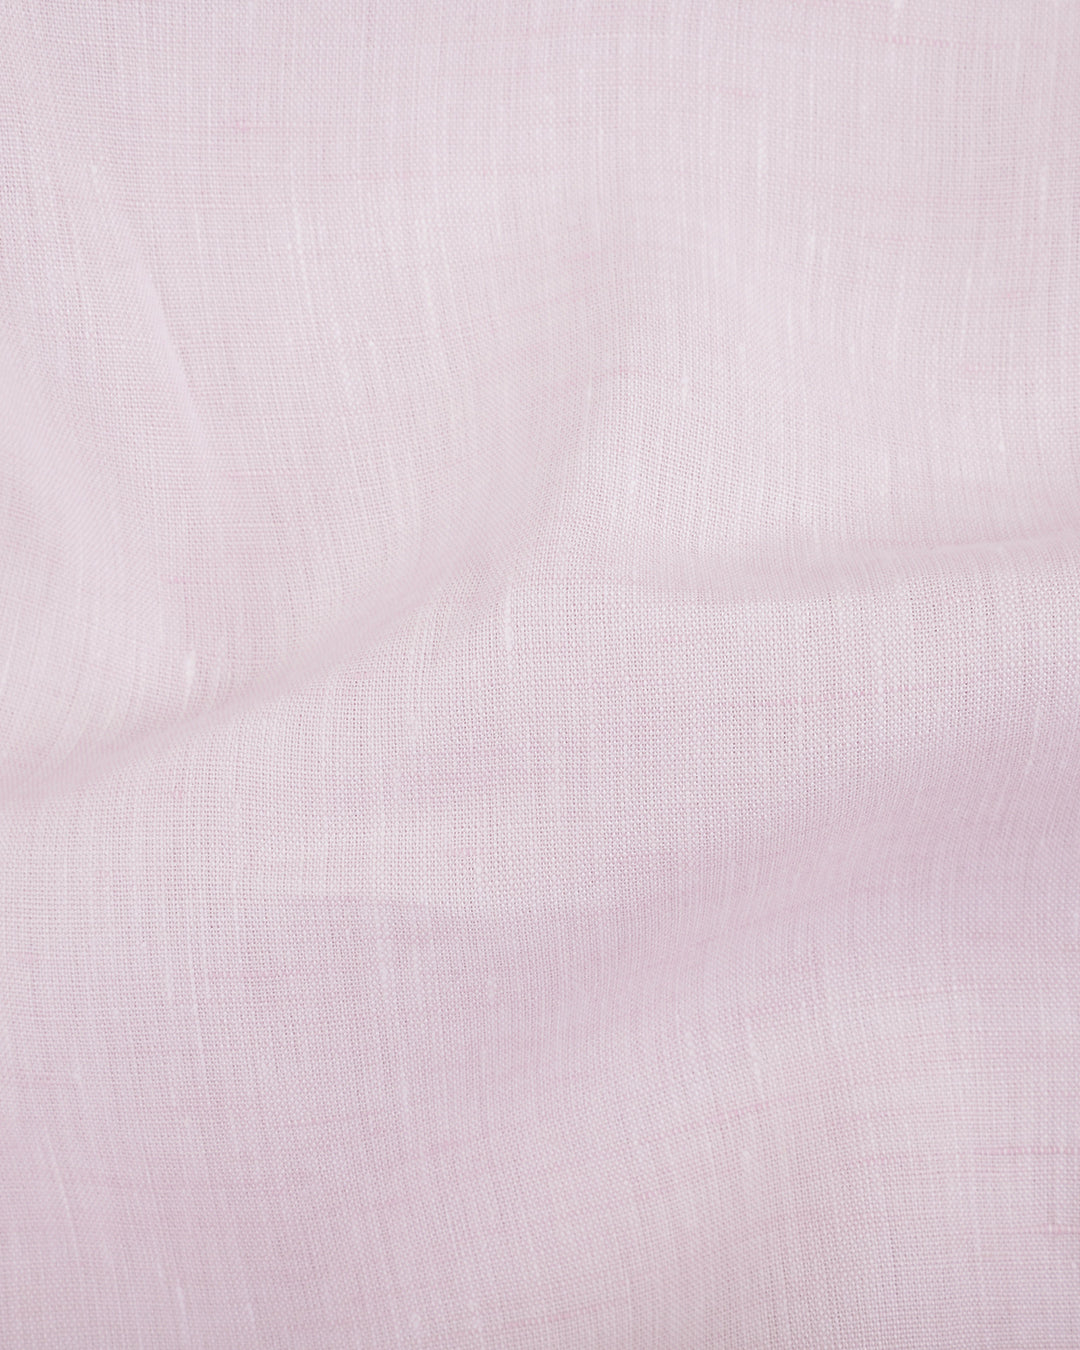 Grandi and Rubinelli Soft Pink Linen